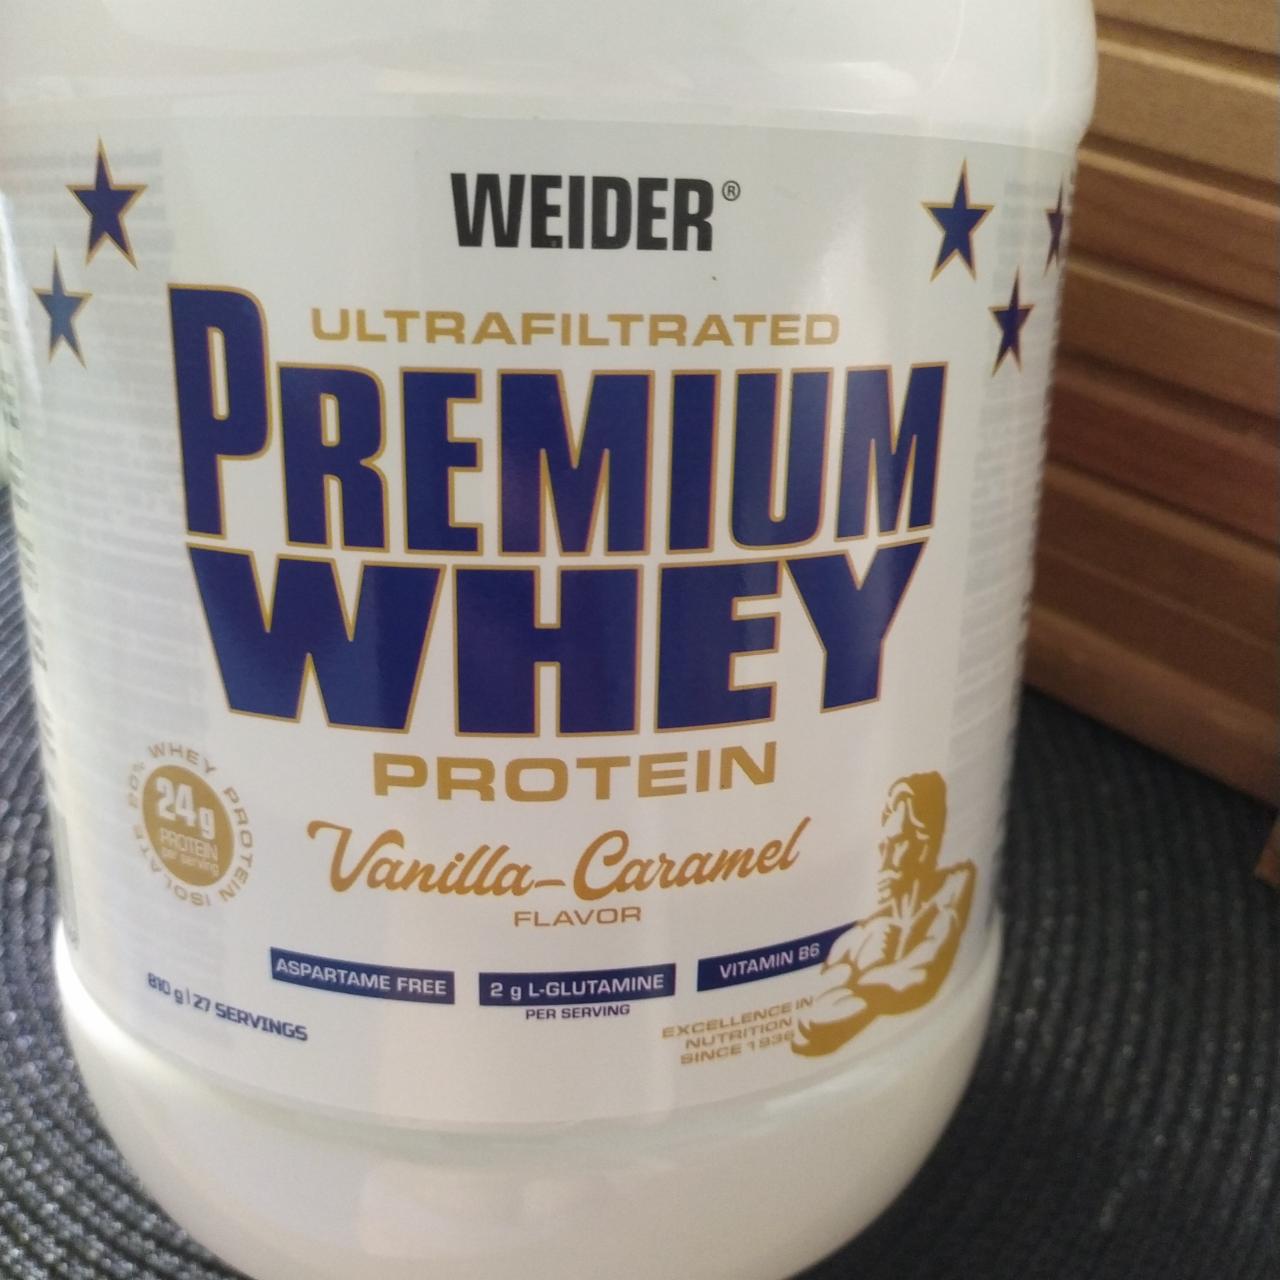 Fotografie - Premium WHEY protein Weider